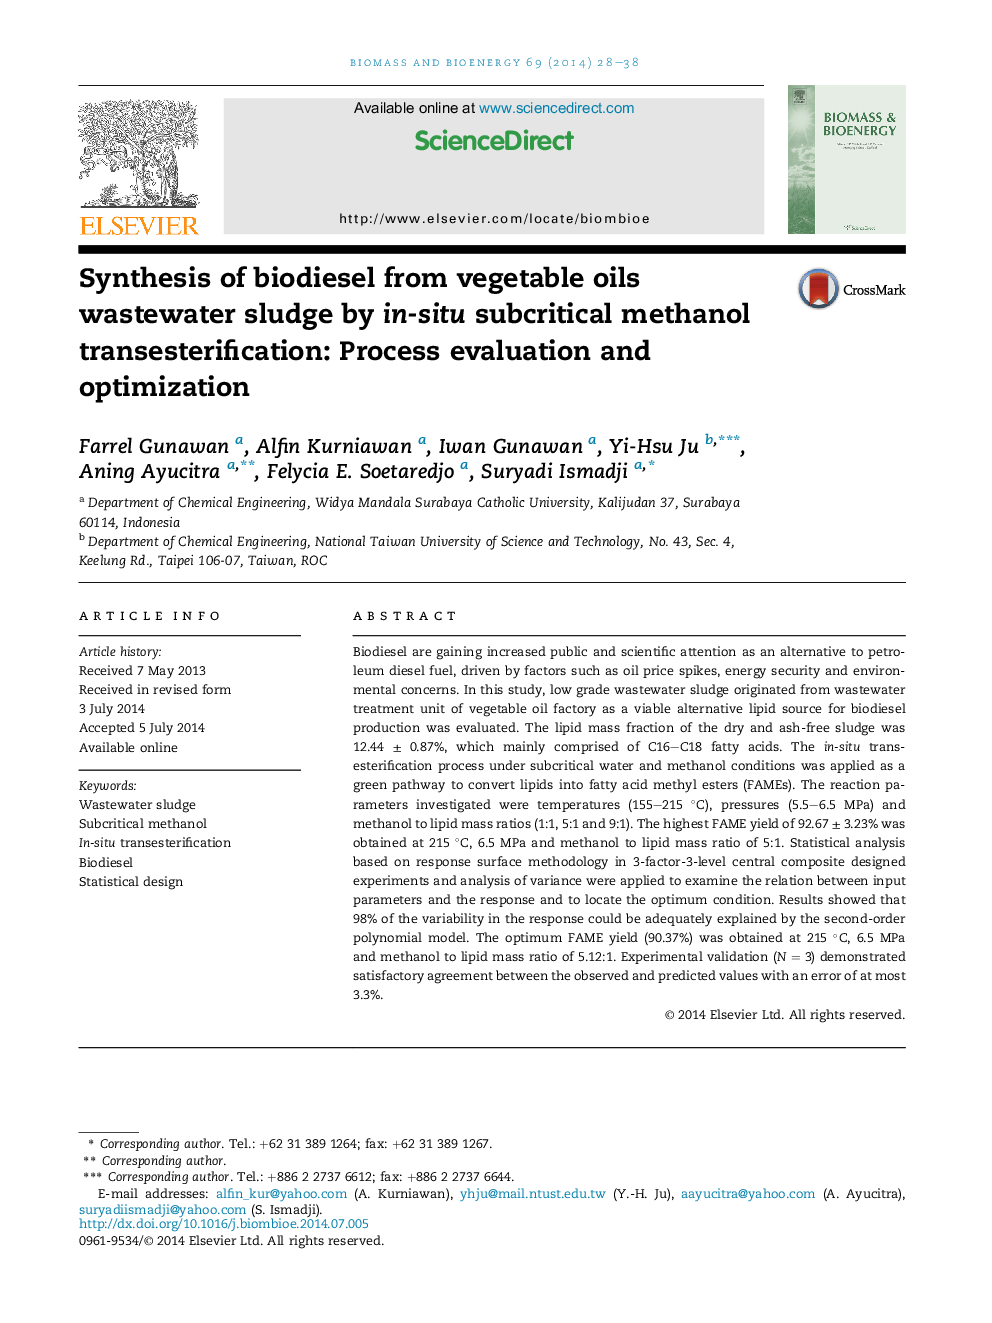 سنتز بیودیزل از لجن فاضلاب روغن های گیاهی از طریق فرآیند استنشاق متانول زیر کریستالی در محل: ارزیابی و بهینه سازی فرایند 